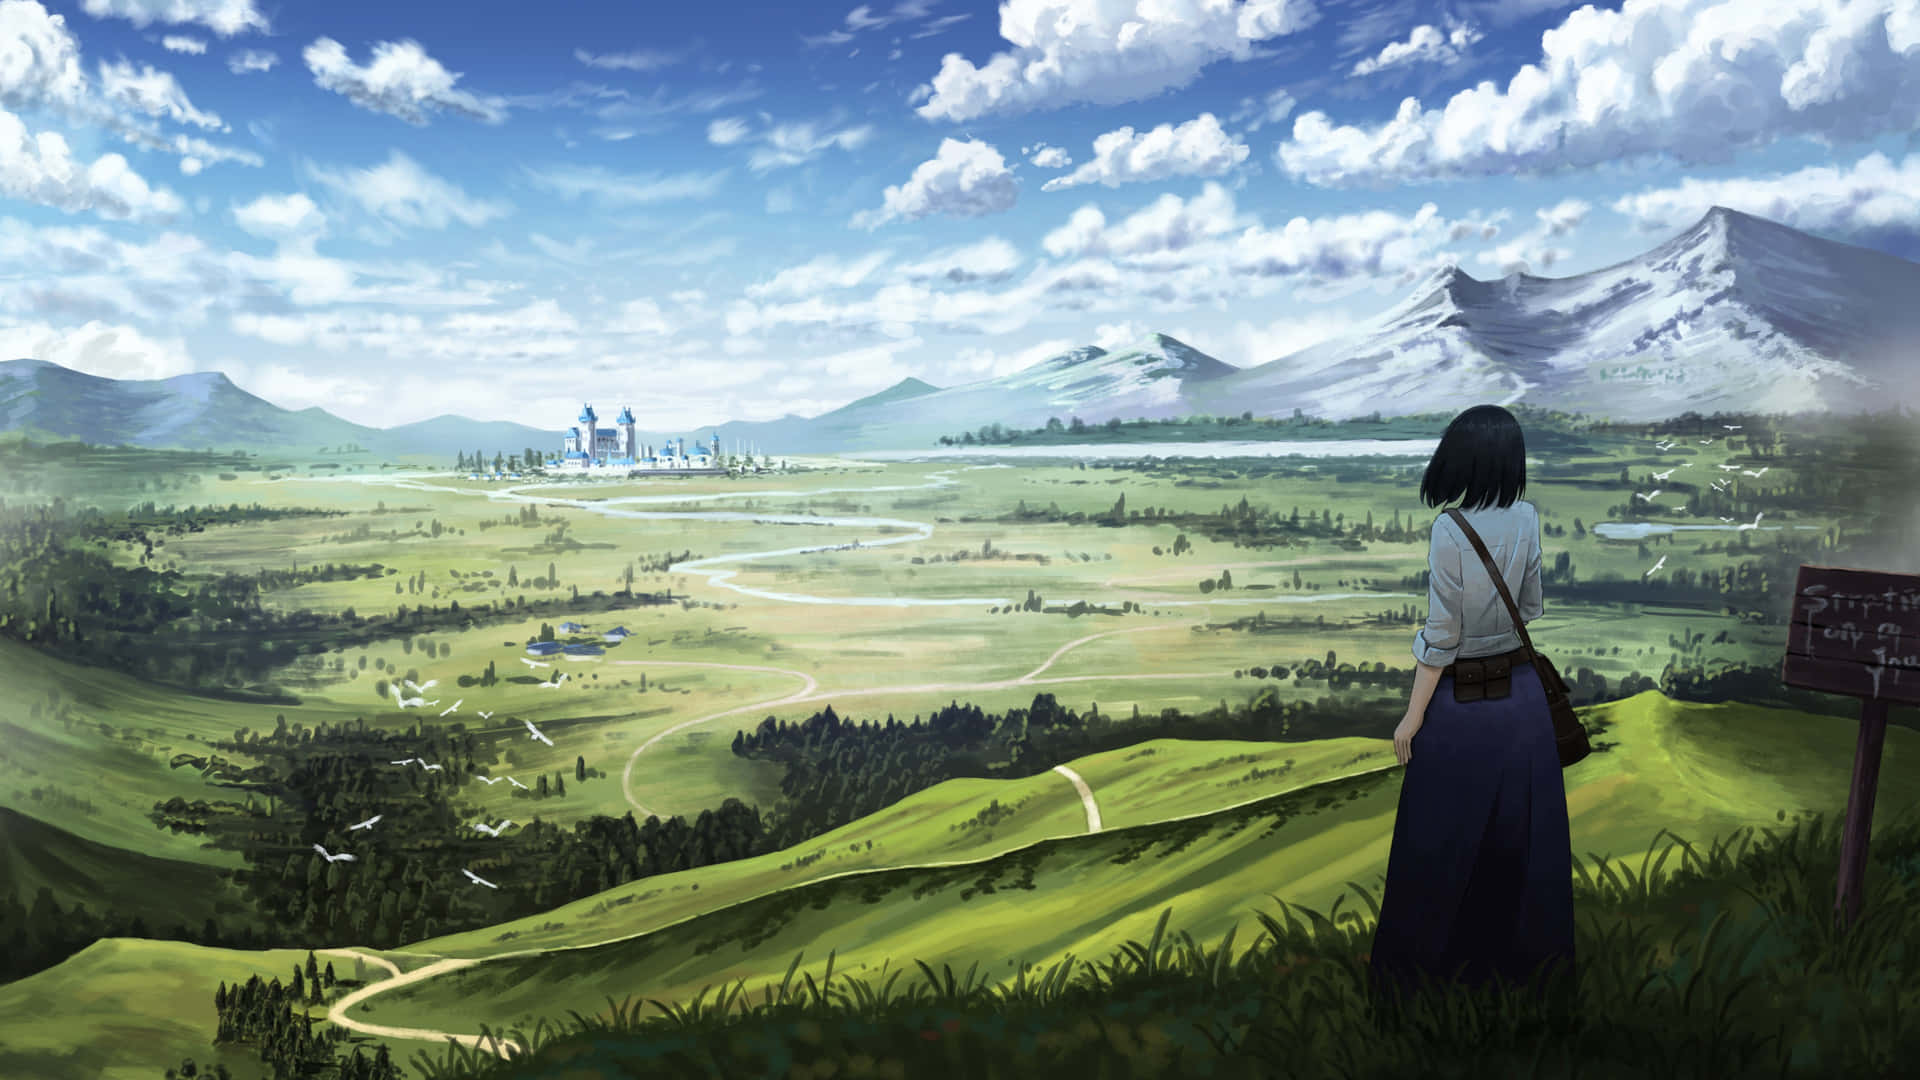 Einfaszinierendes Anime-bild In 4k Von Einem Futuristischen Stadtbild.